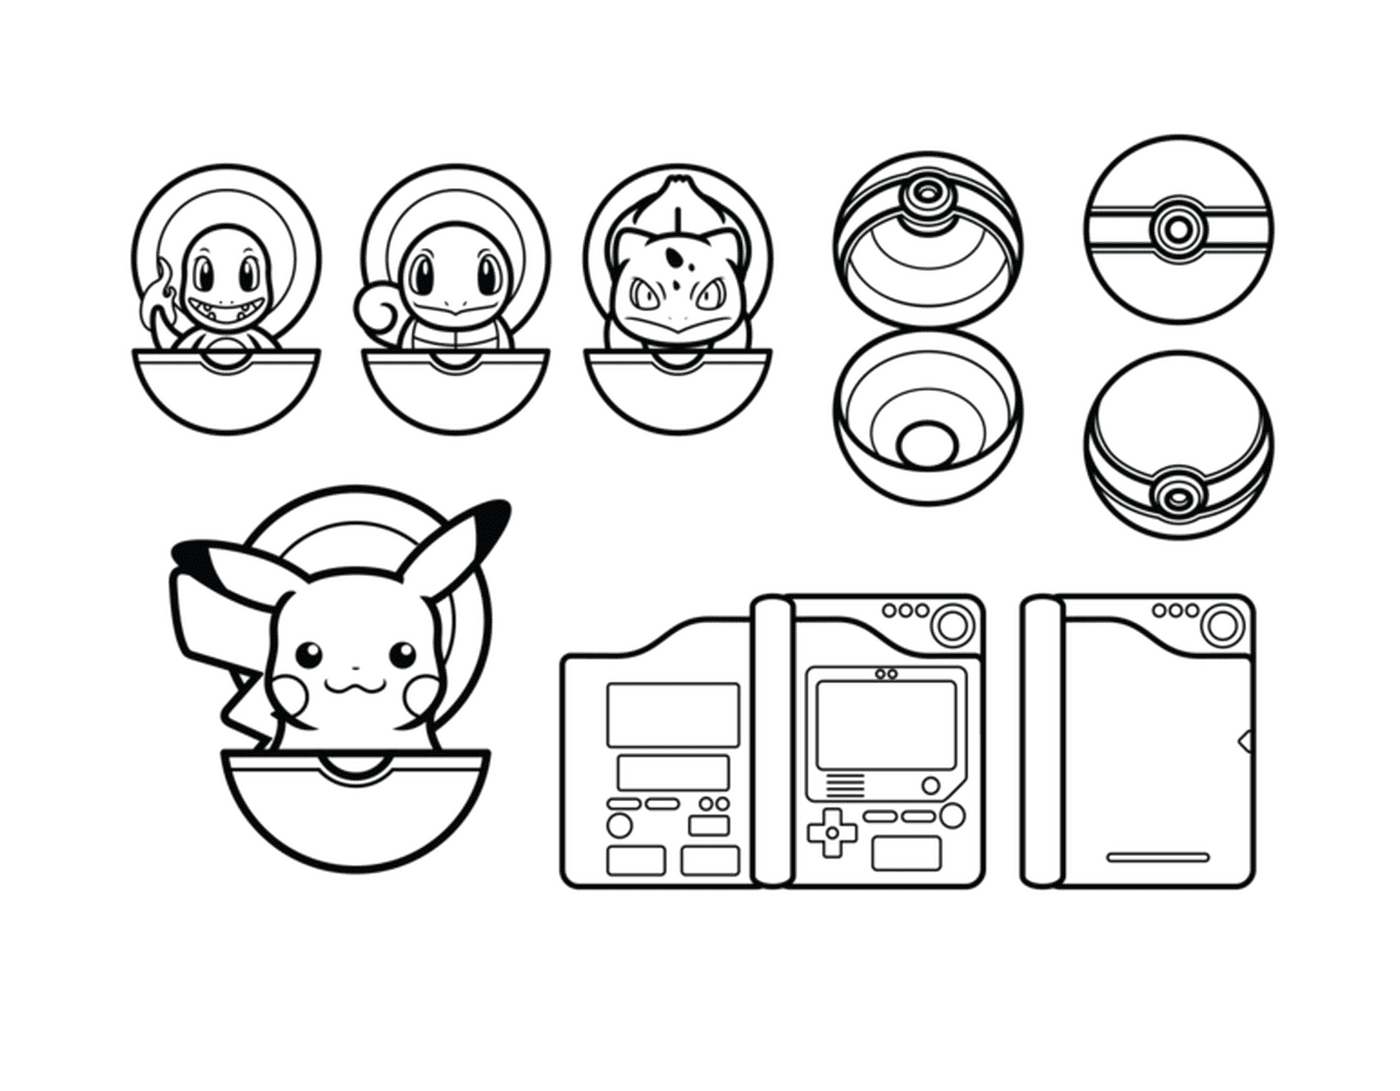  Pikachu e Pokéball, diversidade de ilustrações cativantes 